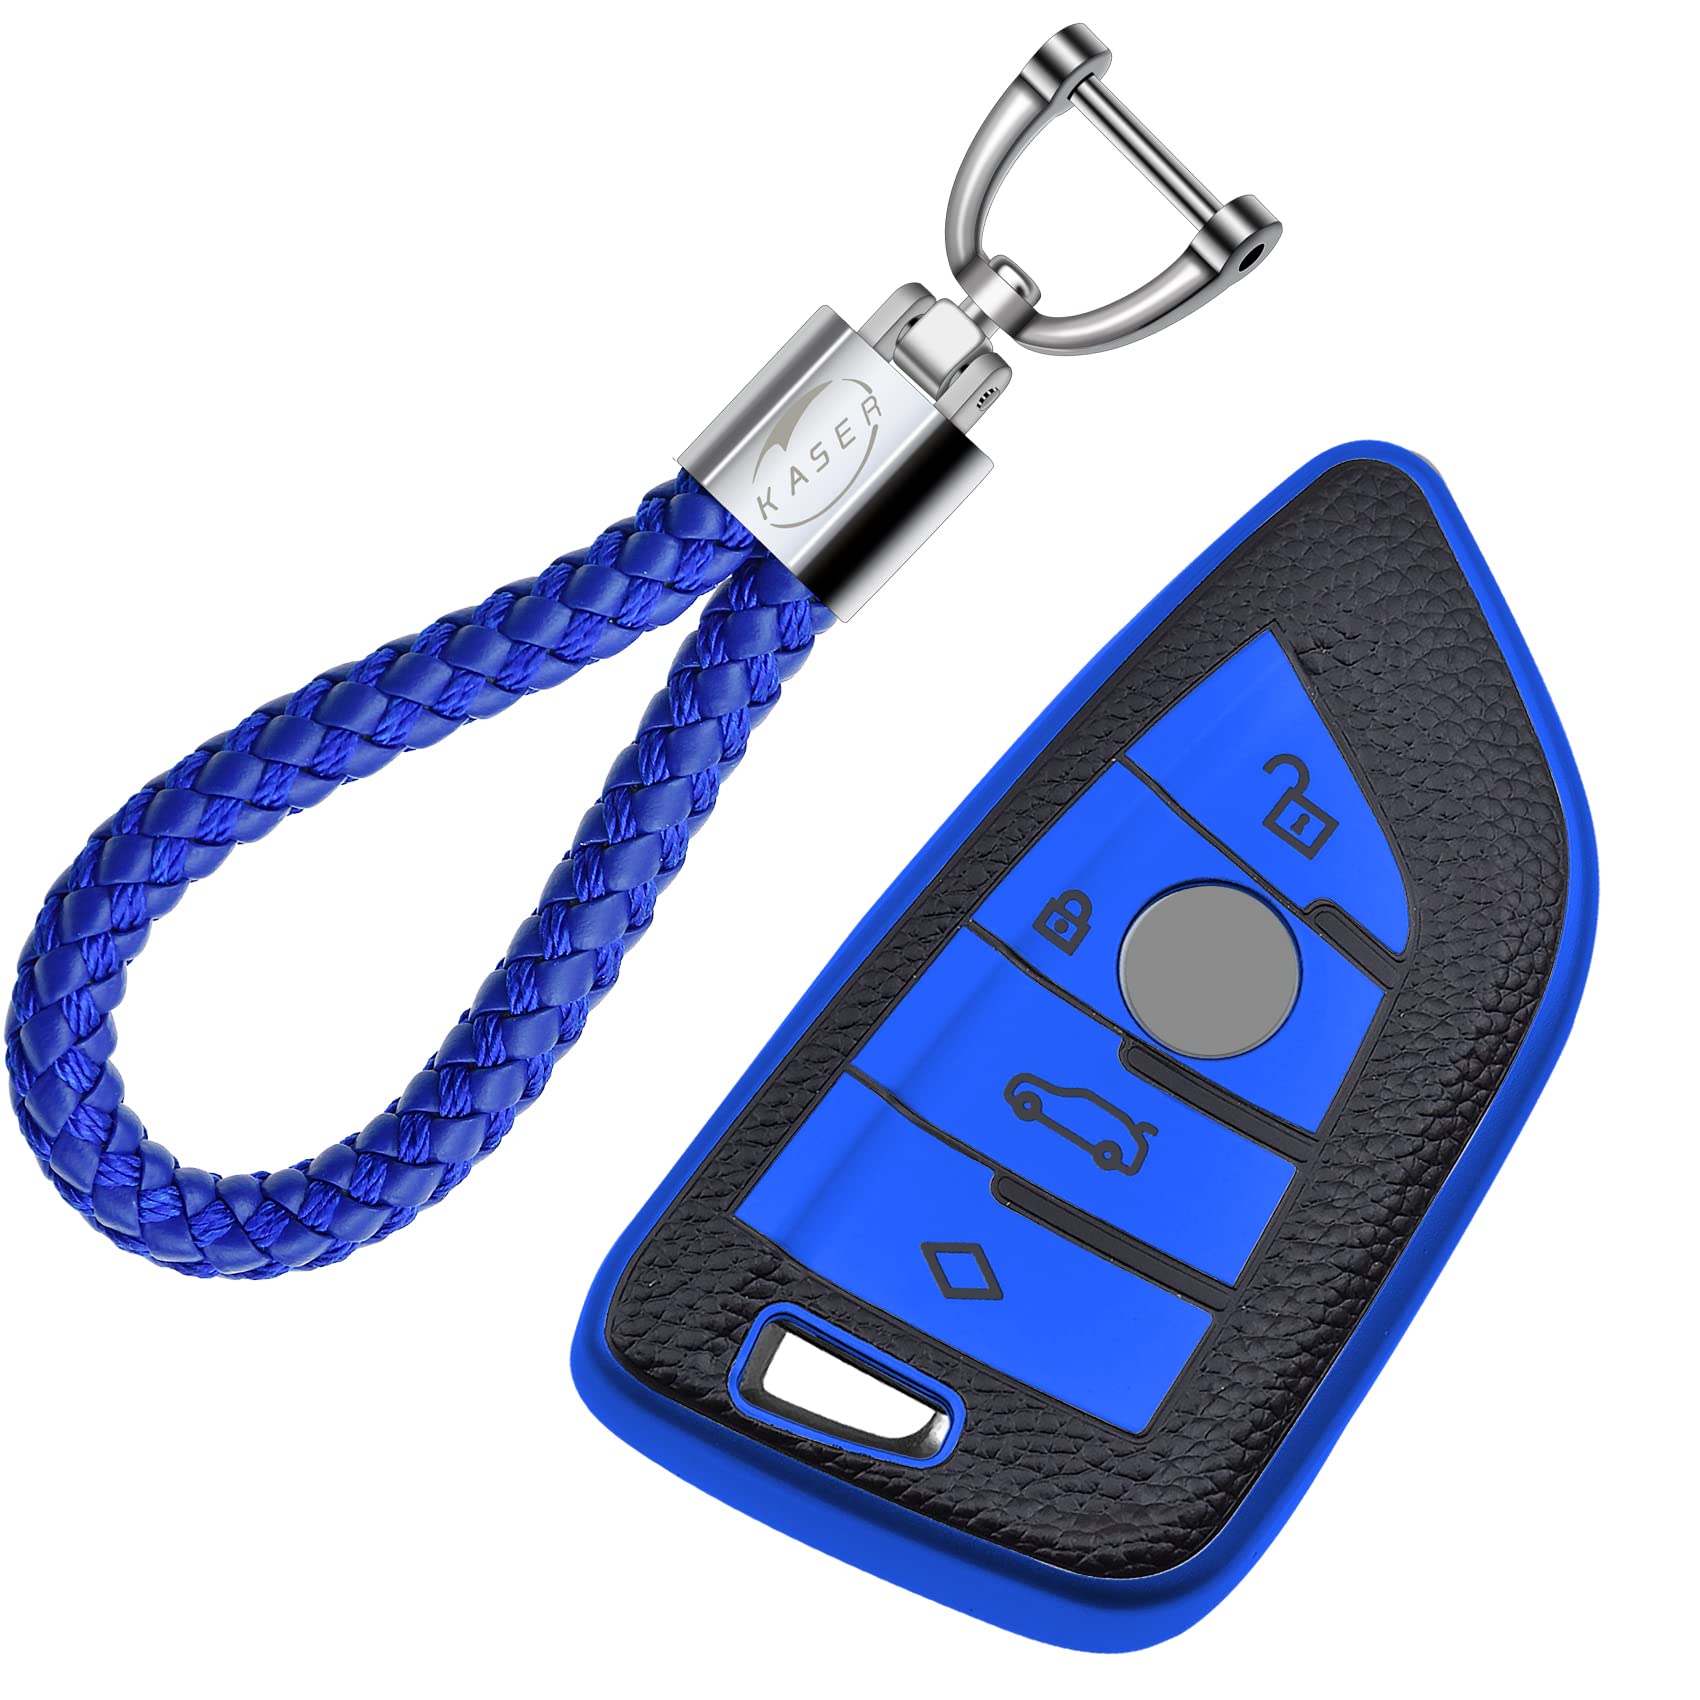 KASER Autoschlüssel Hülle kompatibel für BMW Serie 1 3 5 X1 X3 X4 X5 X6 Schlüsselanhänger Abdeckung Silikon Schutzhülle Ledereffekt (Blau) von Kaser